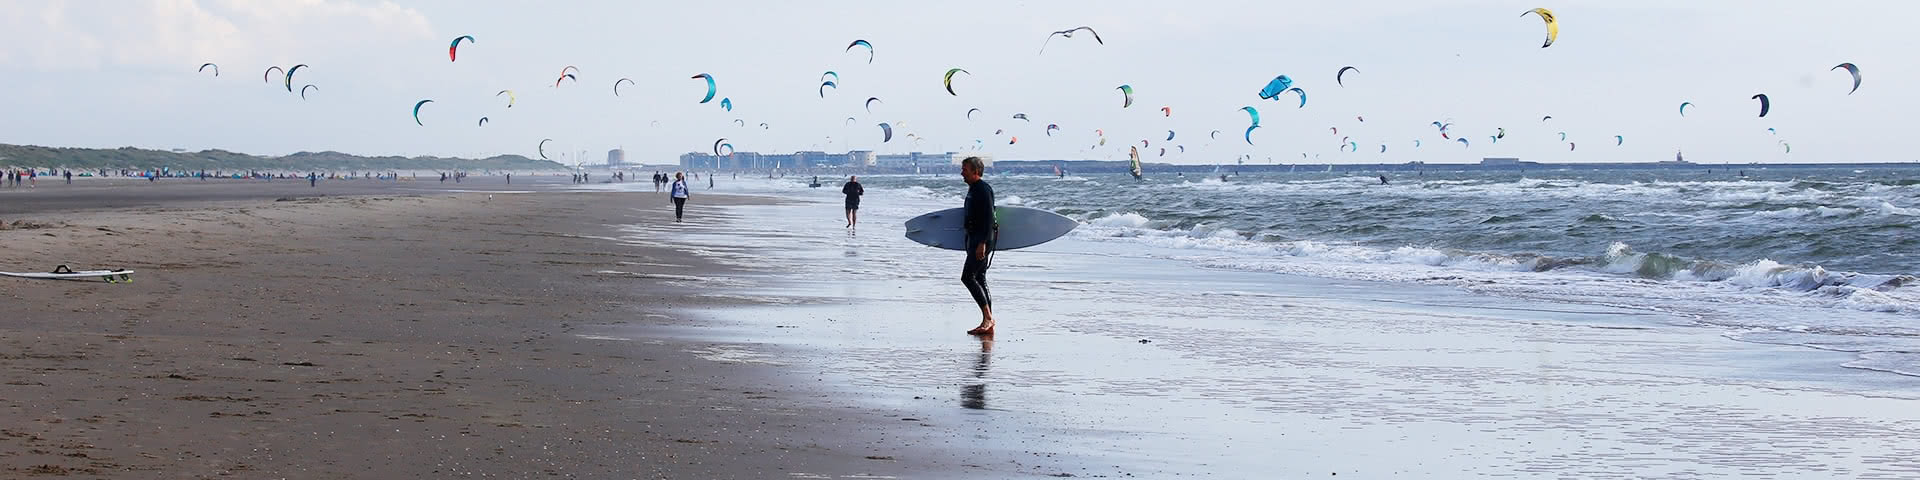 Kitesurfer am Strand von Wijk aan Zee